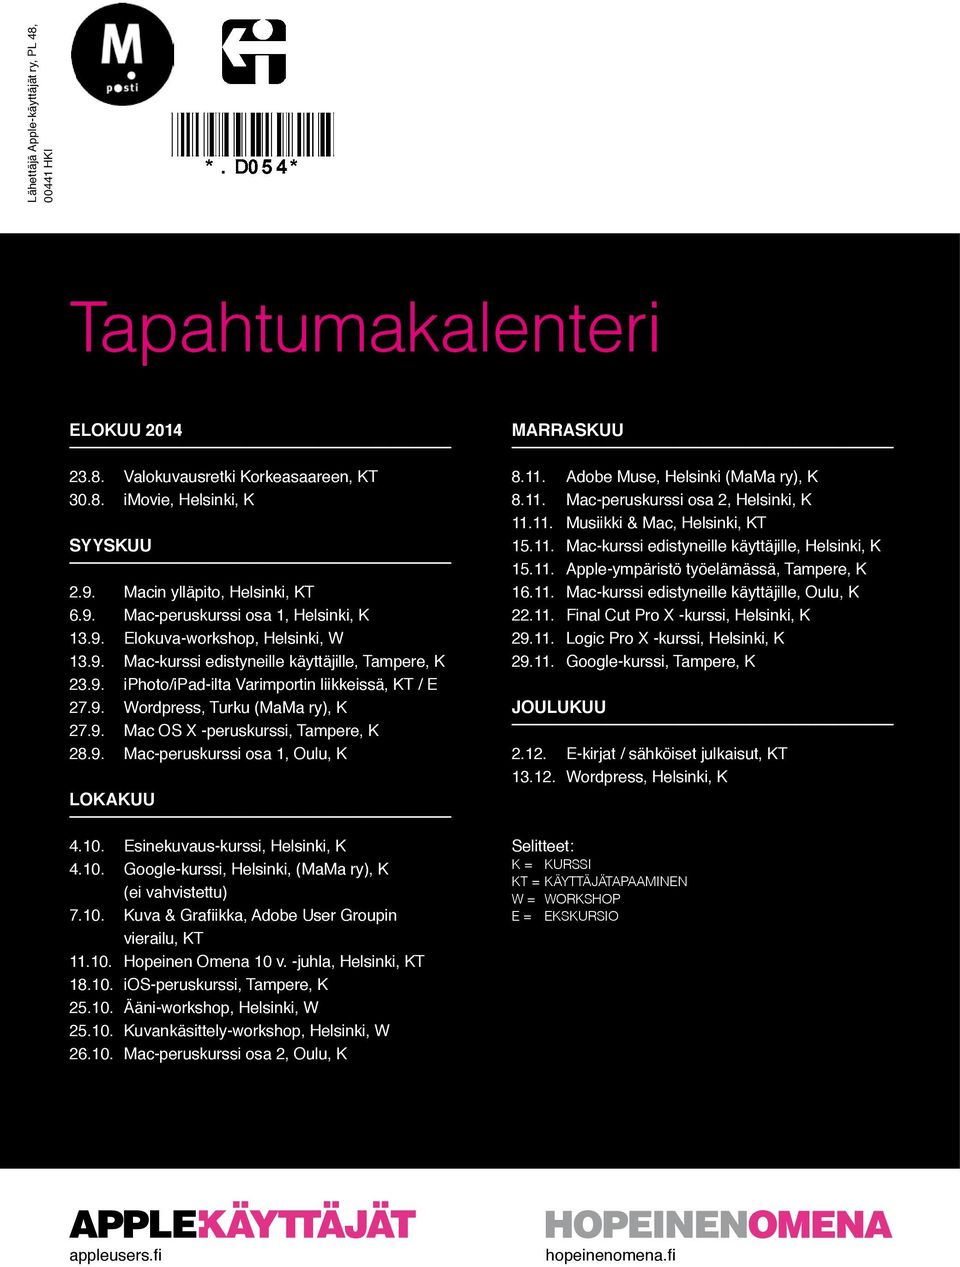 9. Mac-peruskurssi osa 1, Oulu, K LOKAKUU 4.10. Esinekuvaus-kurssi, Helsinki, K 4.10. Google-kurssi, Helsinki, (MaMa ry), K (ei vahvistettu) 7.10. Kuva & Grafiikka, Adobe User Groupin vierailu, KT 11.